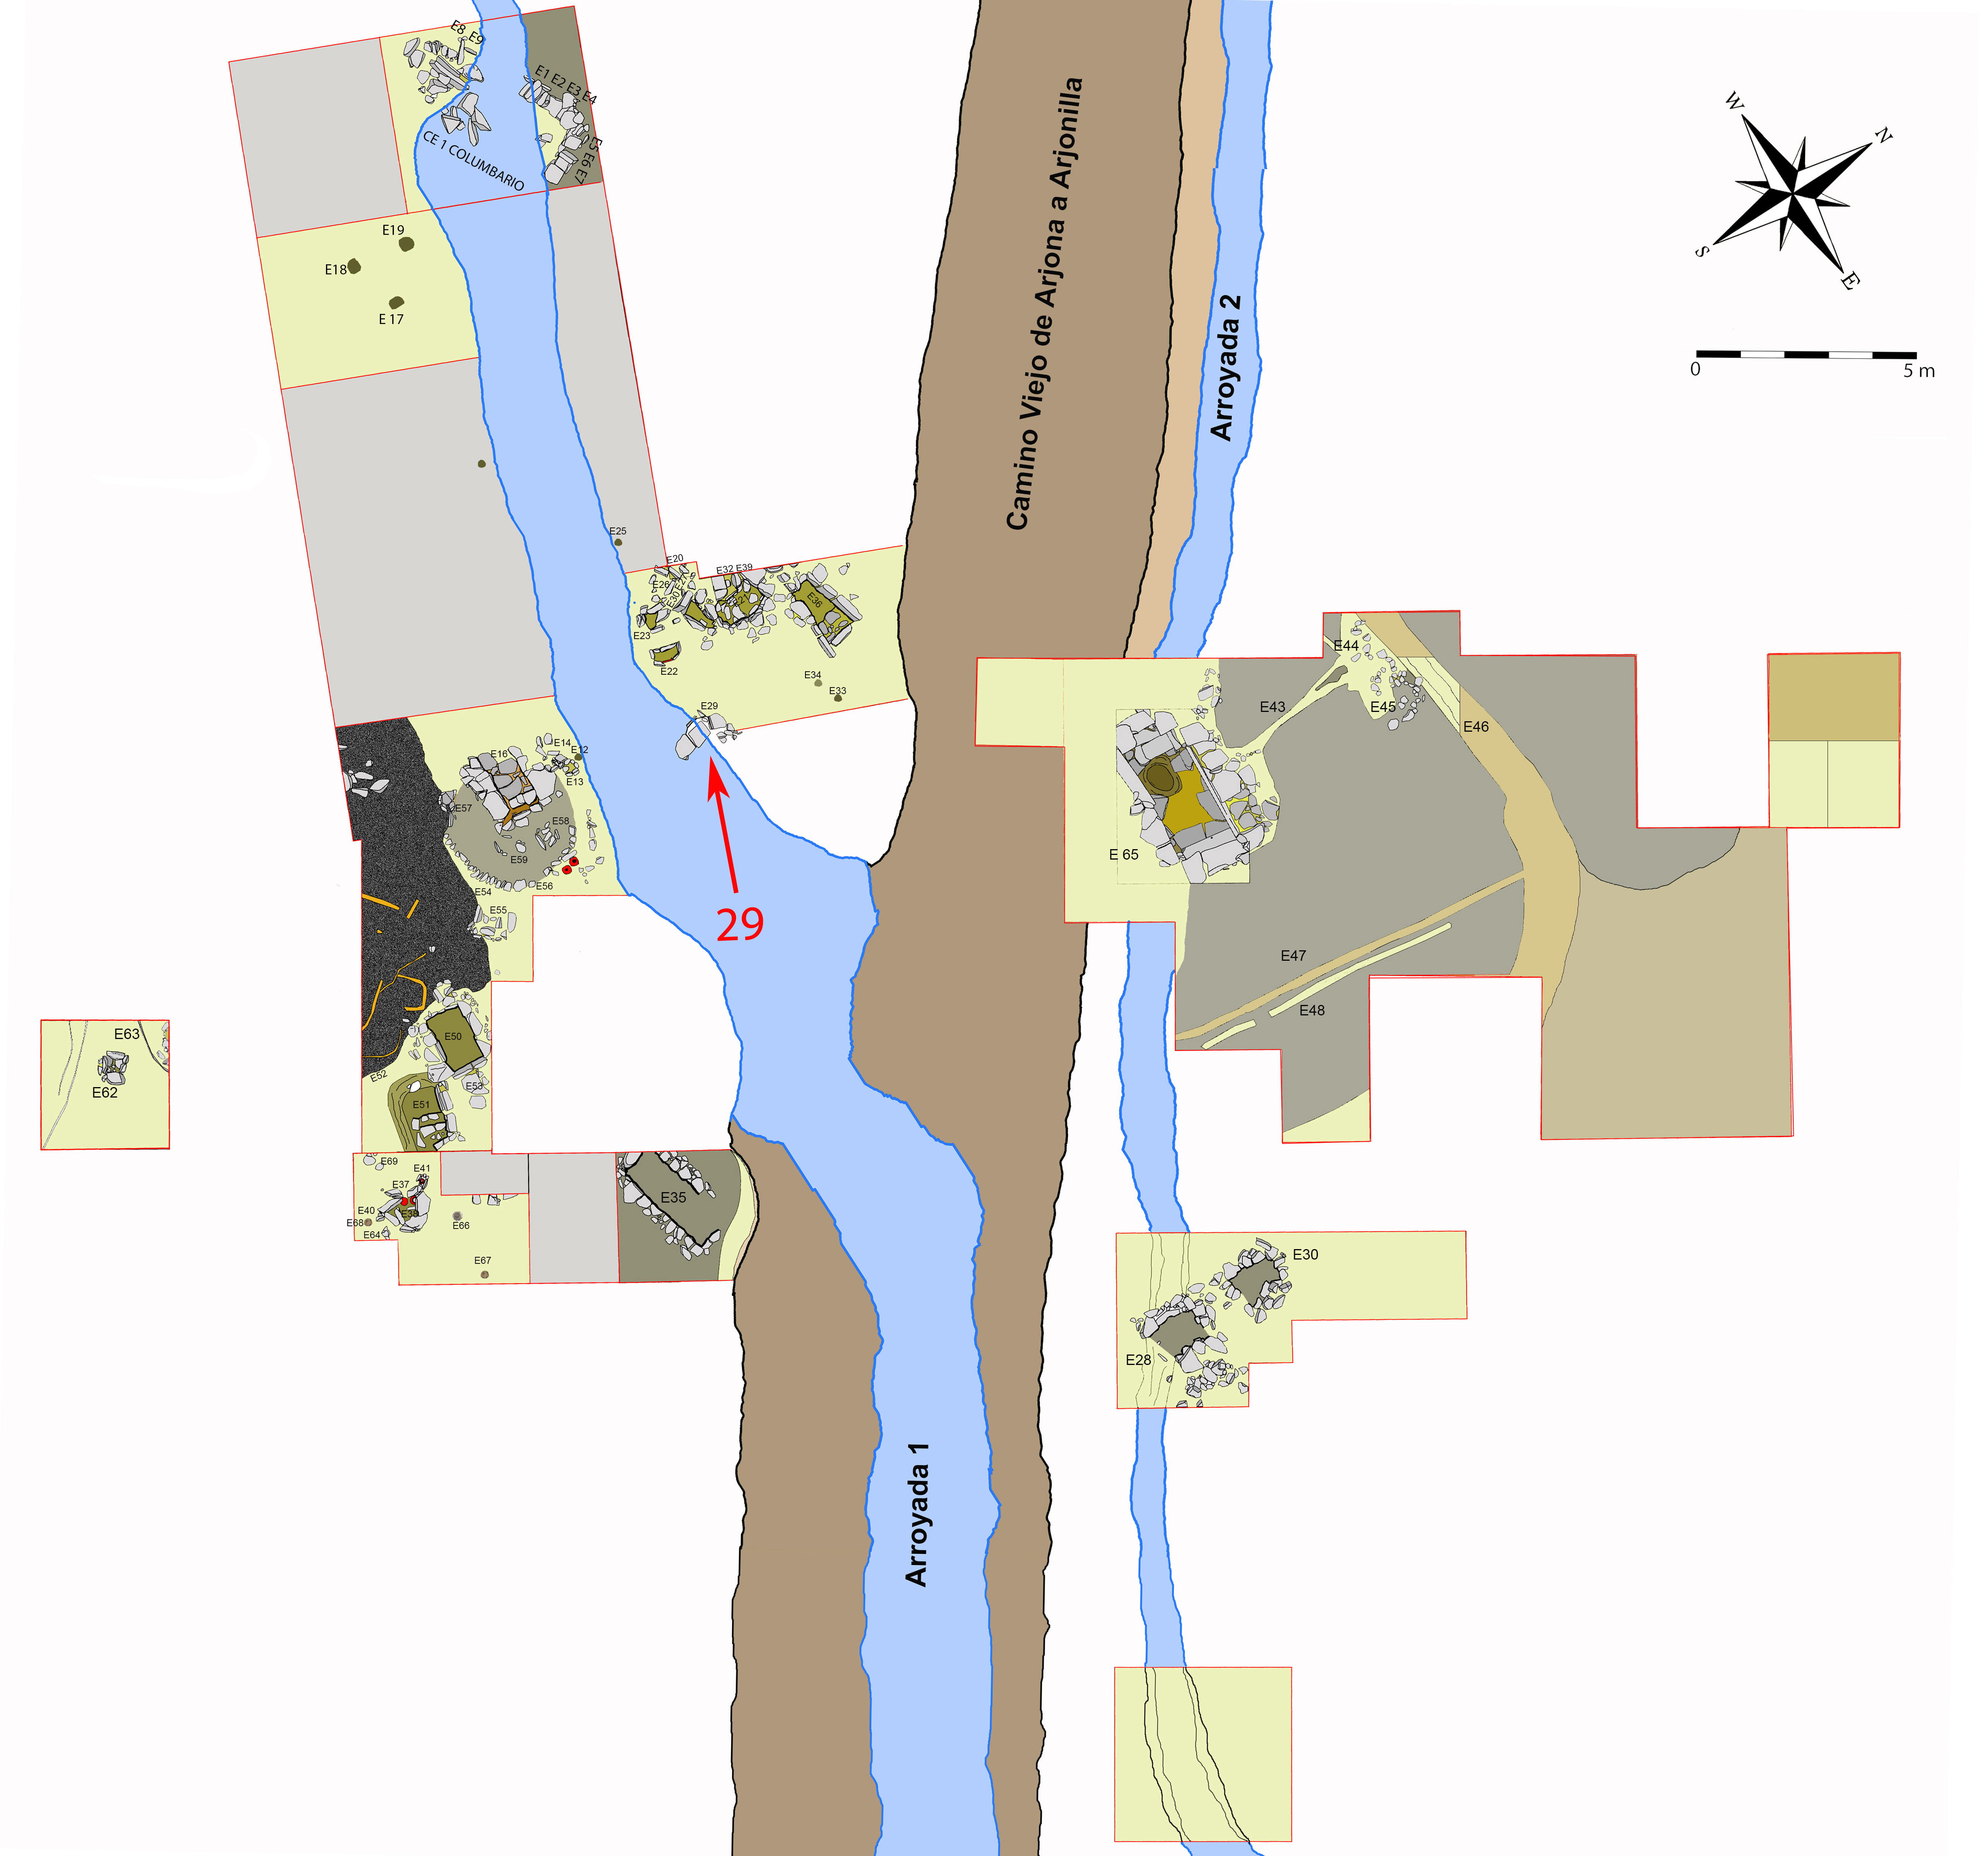 Plano general de la necrópolis de Piquía y localización de la tumba 29